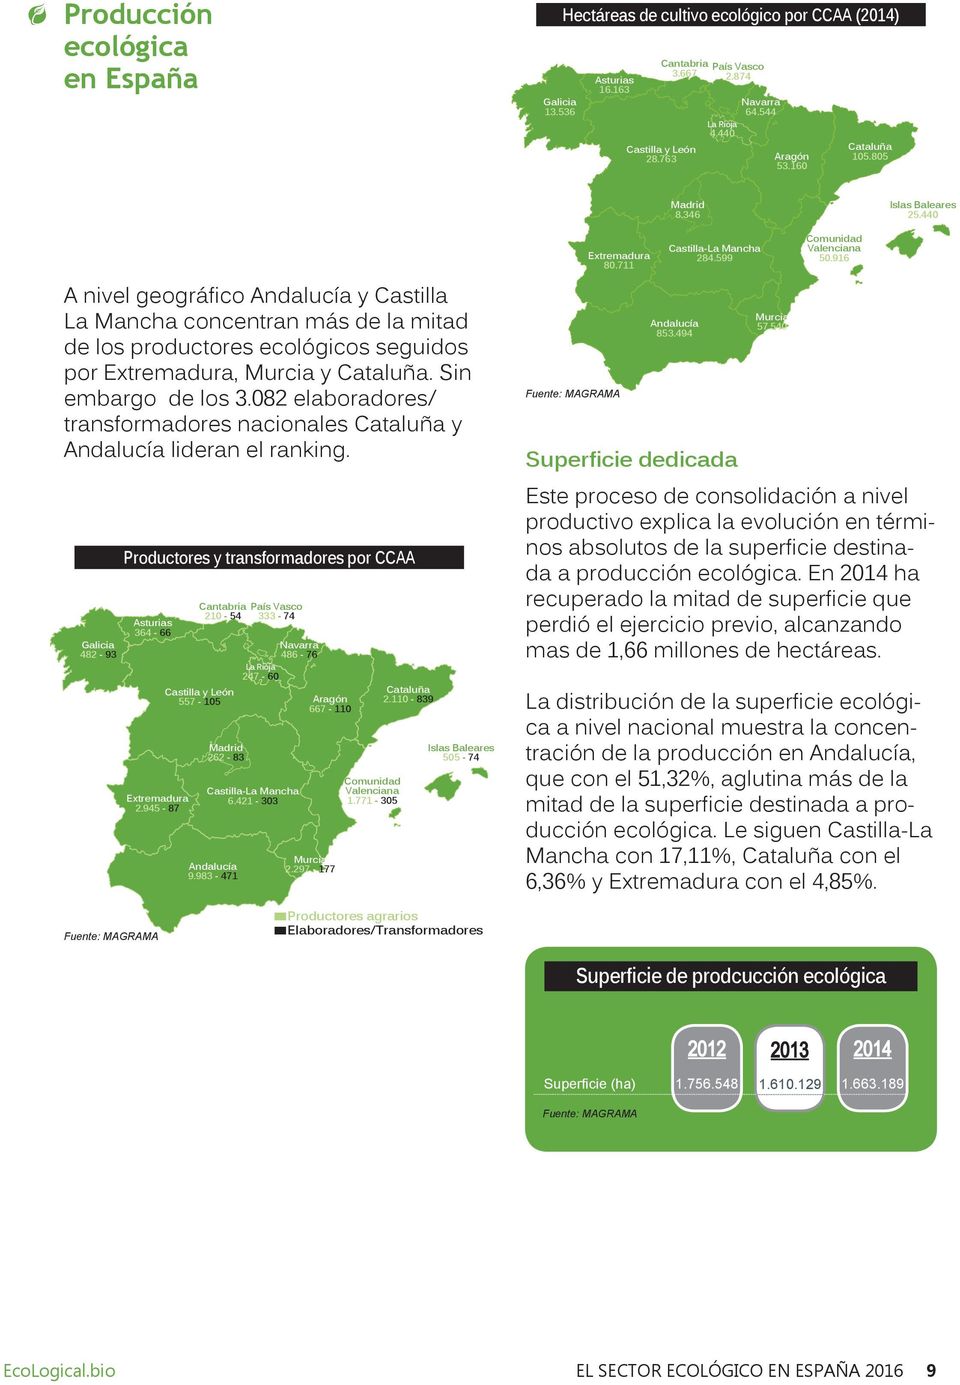 440 A nivel geográfico Andalucía y Castilla La Mancha concentran más de la mitad de los productores ecológicos seguidos por Extremadura, Murcia y Cataluña. Sin embargo de los 3.